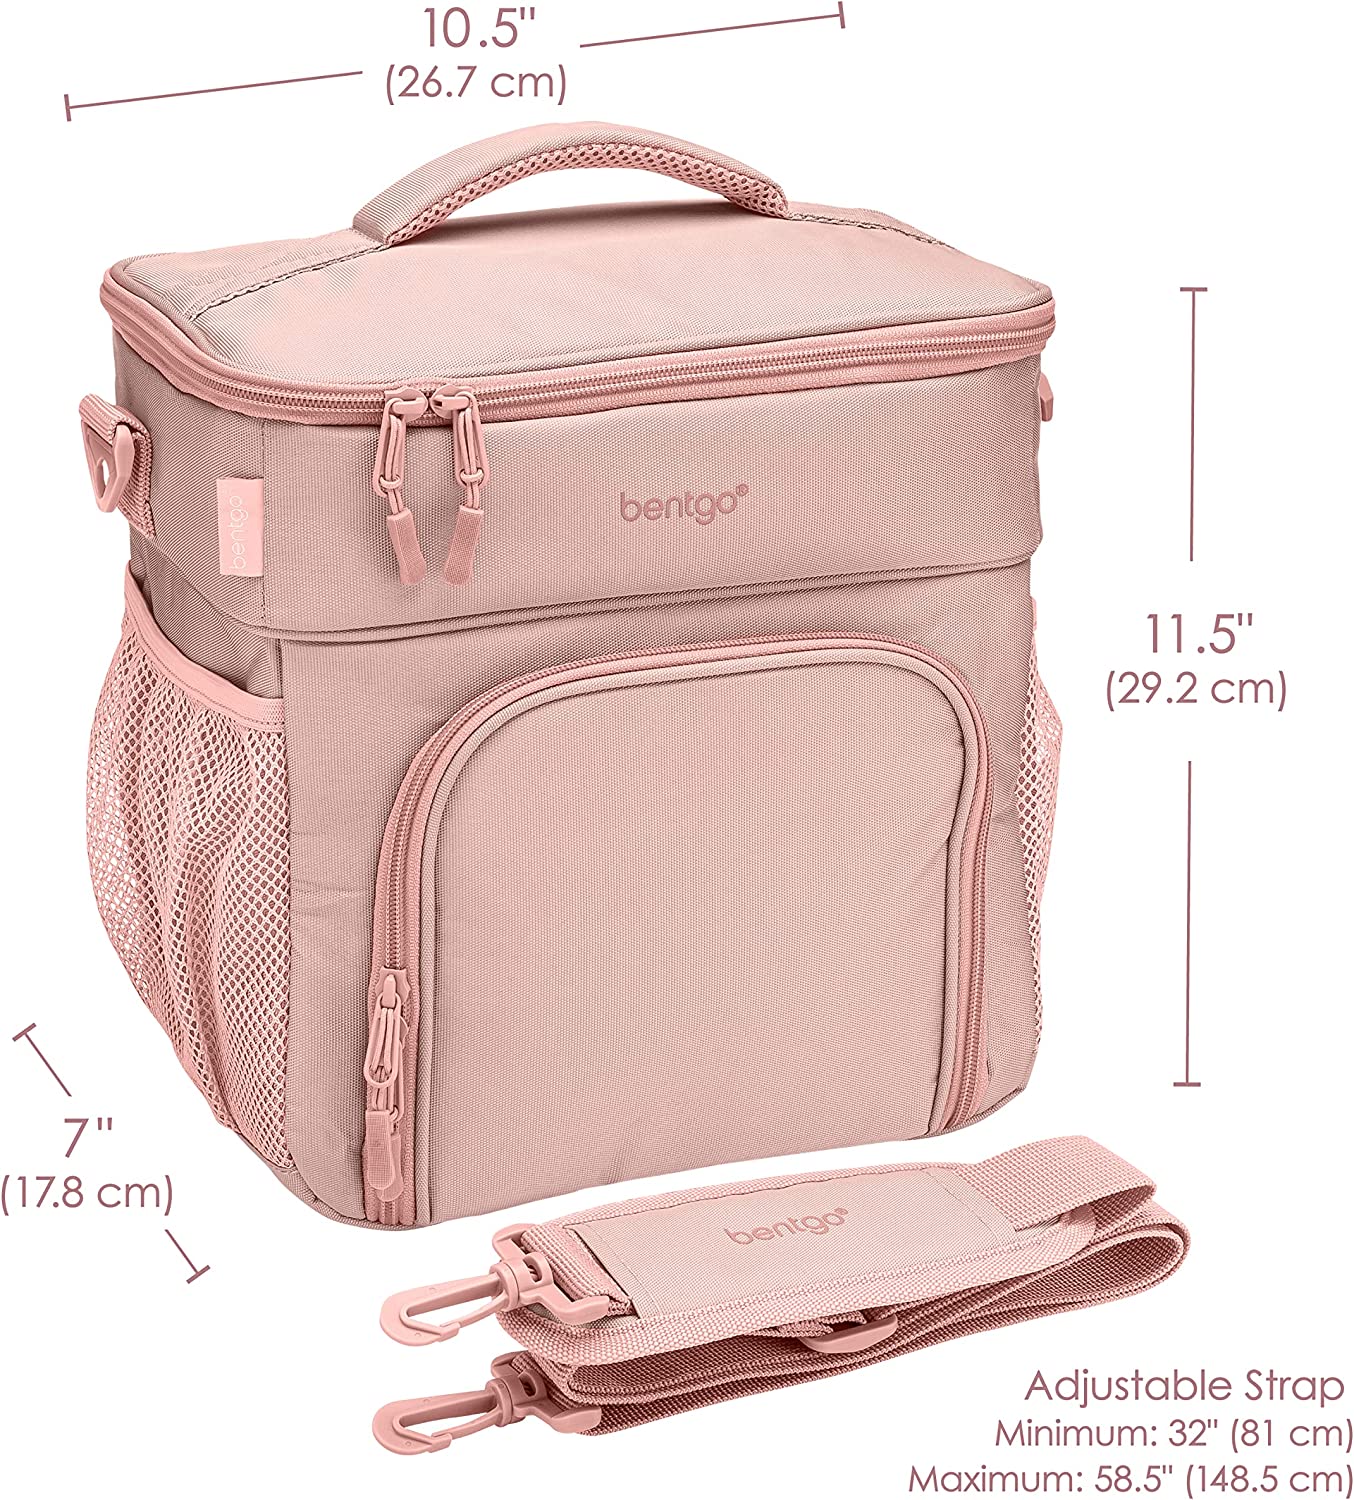 Bentgo Deluxe Lunch Bag - Slate